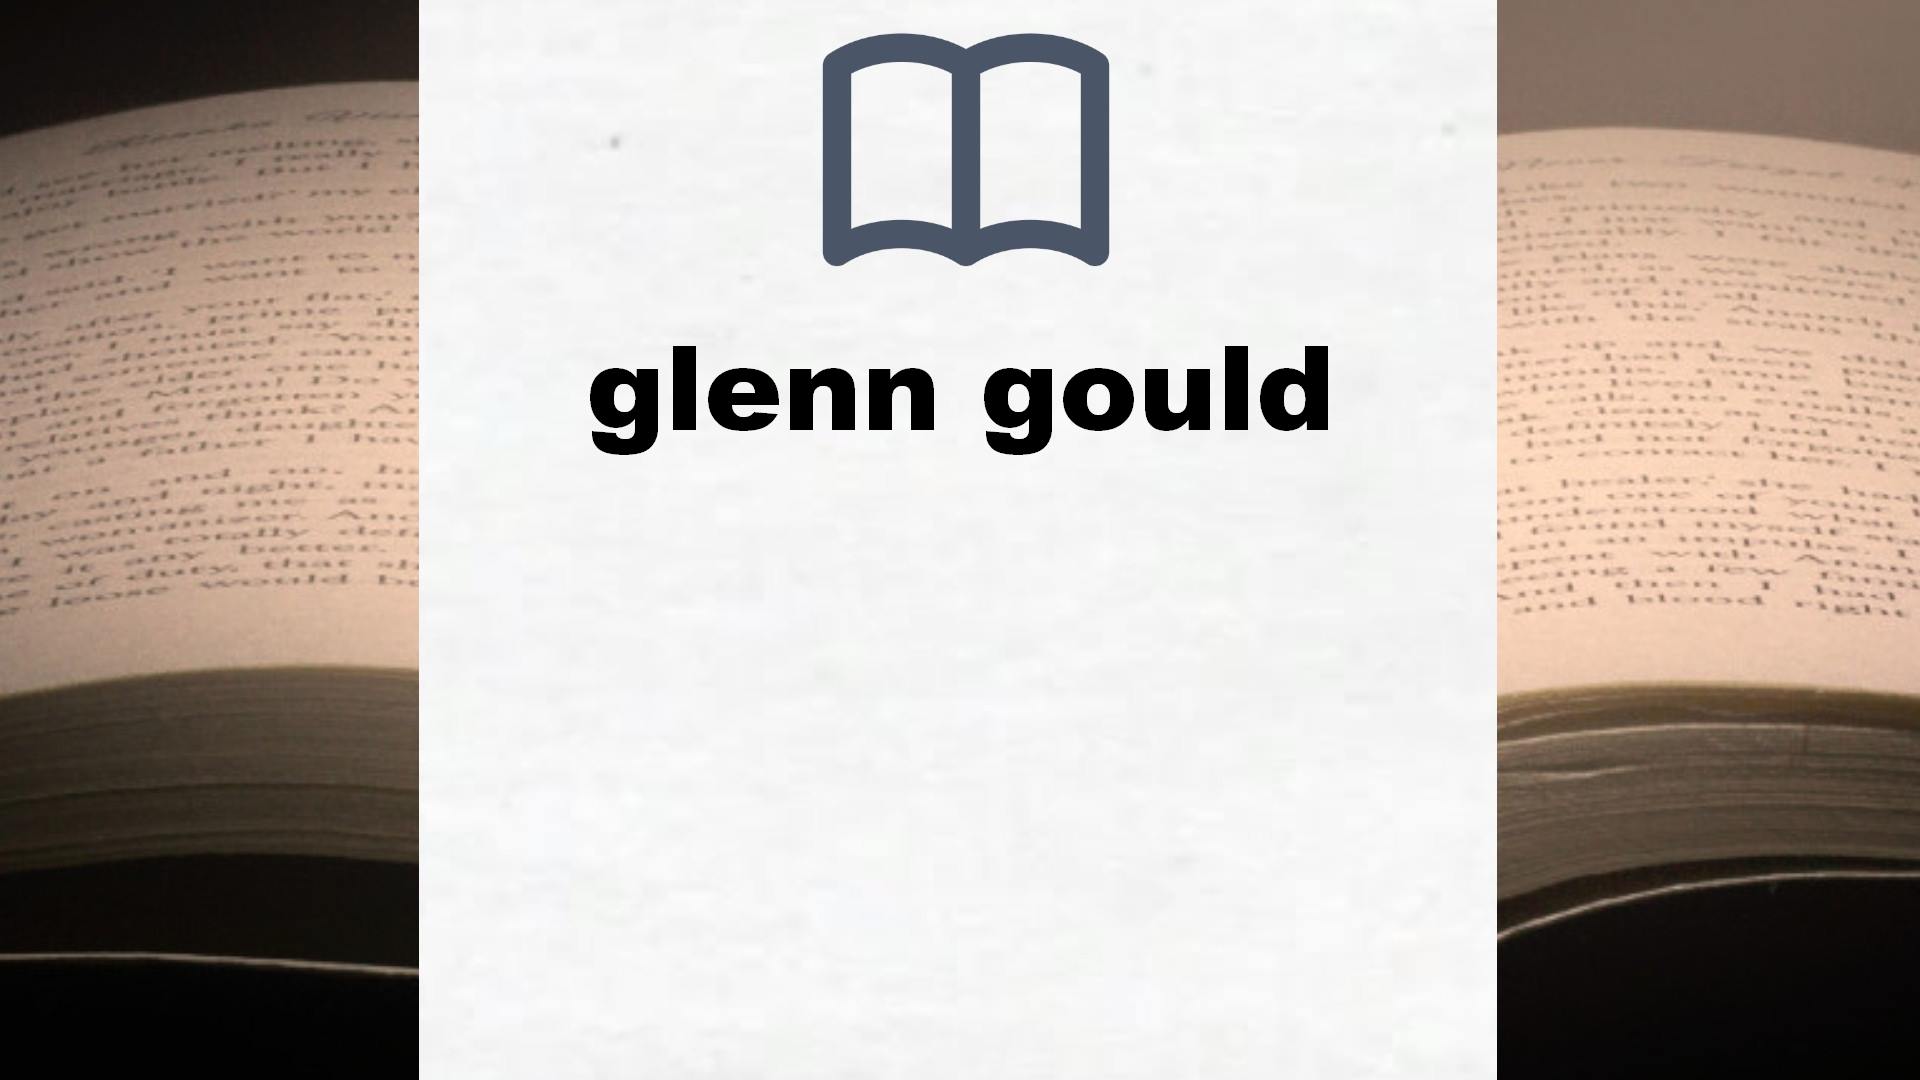 Libros sobre glenn gould